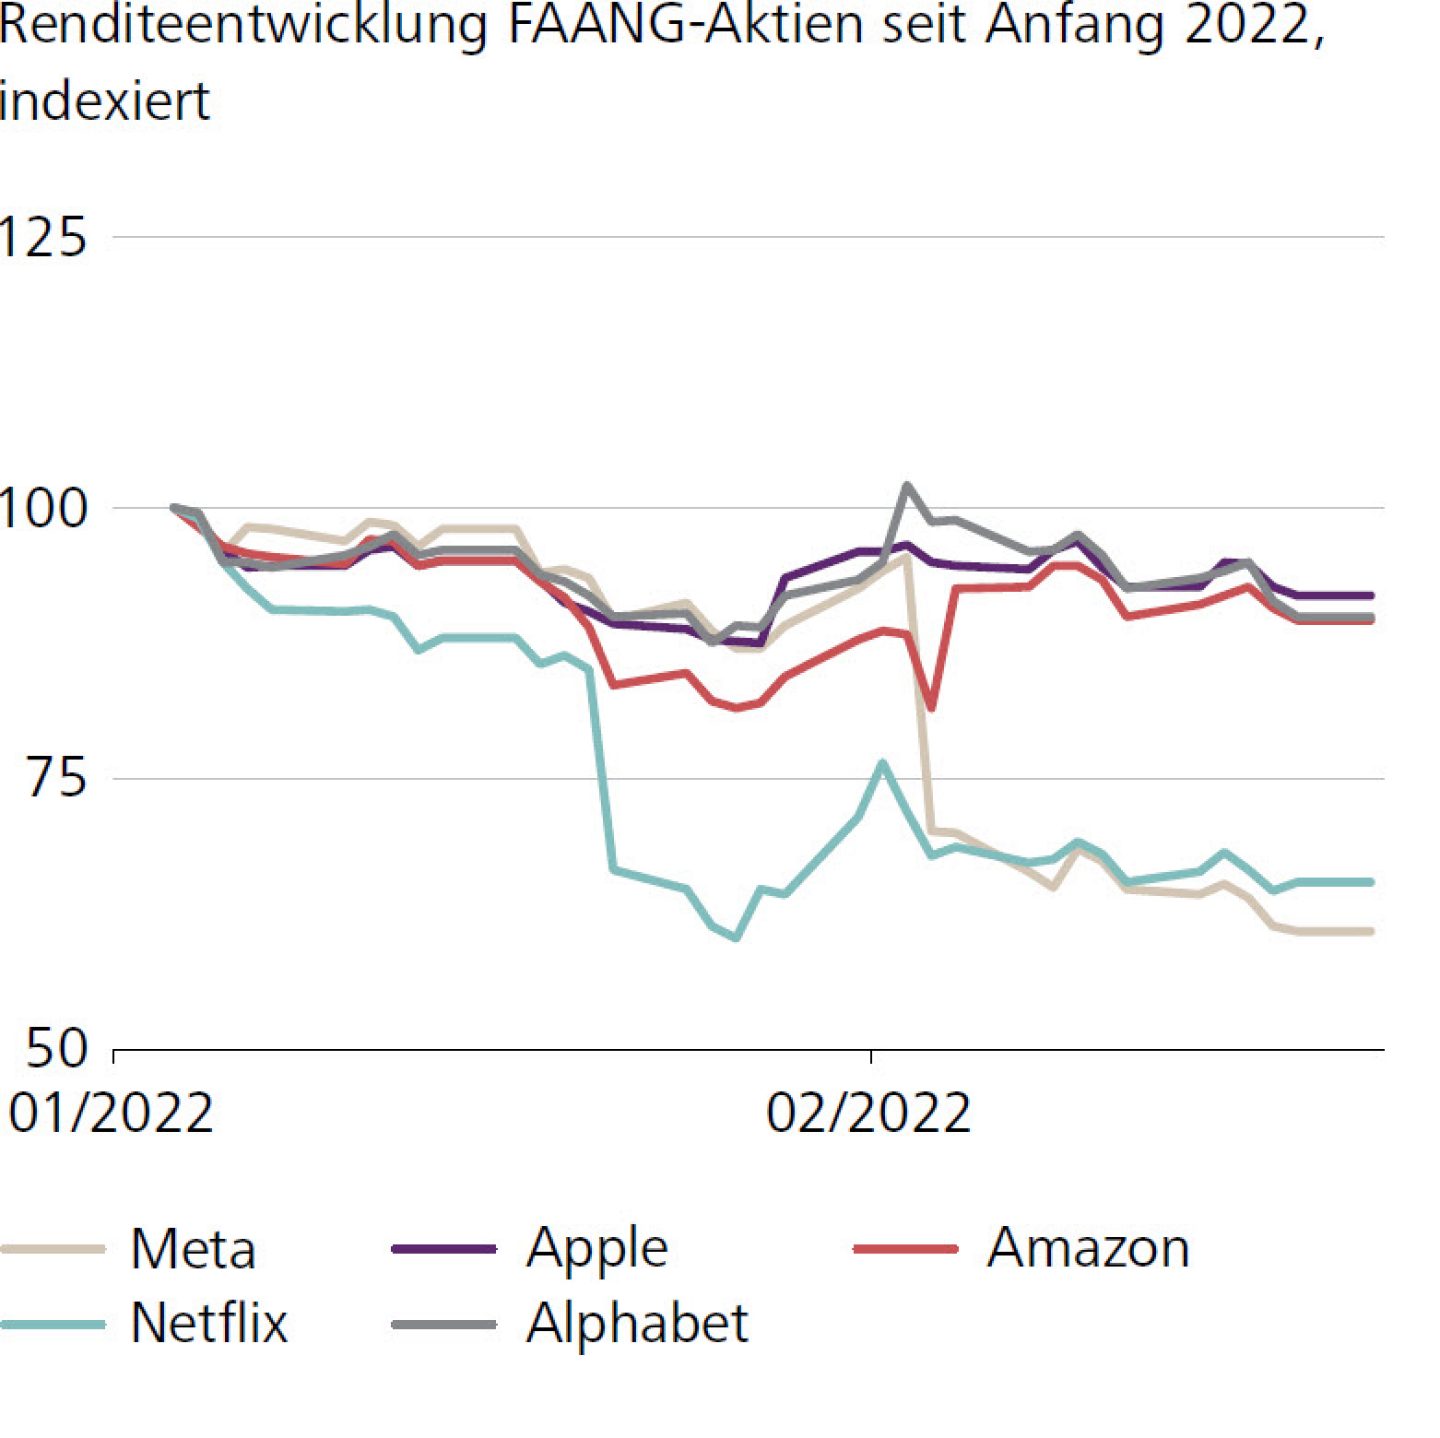 Renditeentwicklung FAANG-Aktien seit Anfang 2022, indexiert